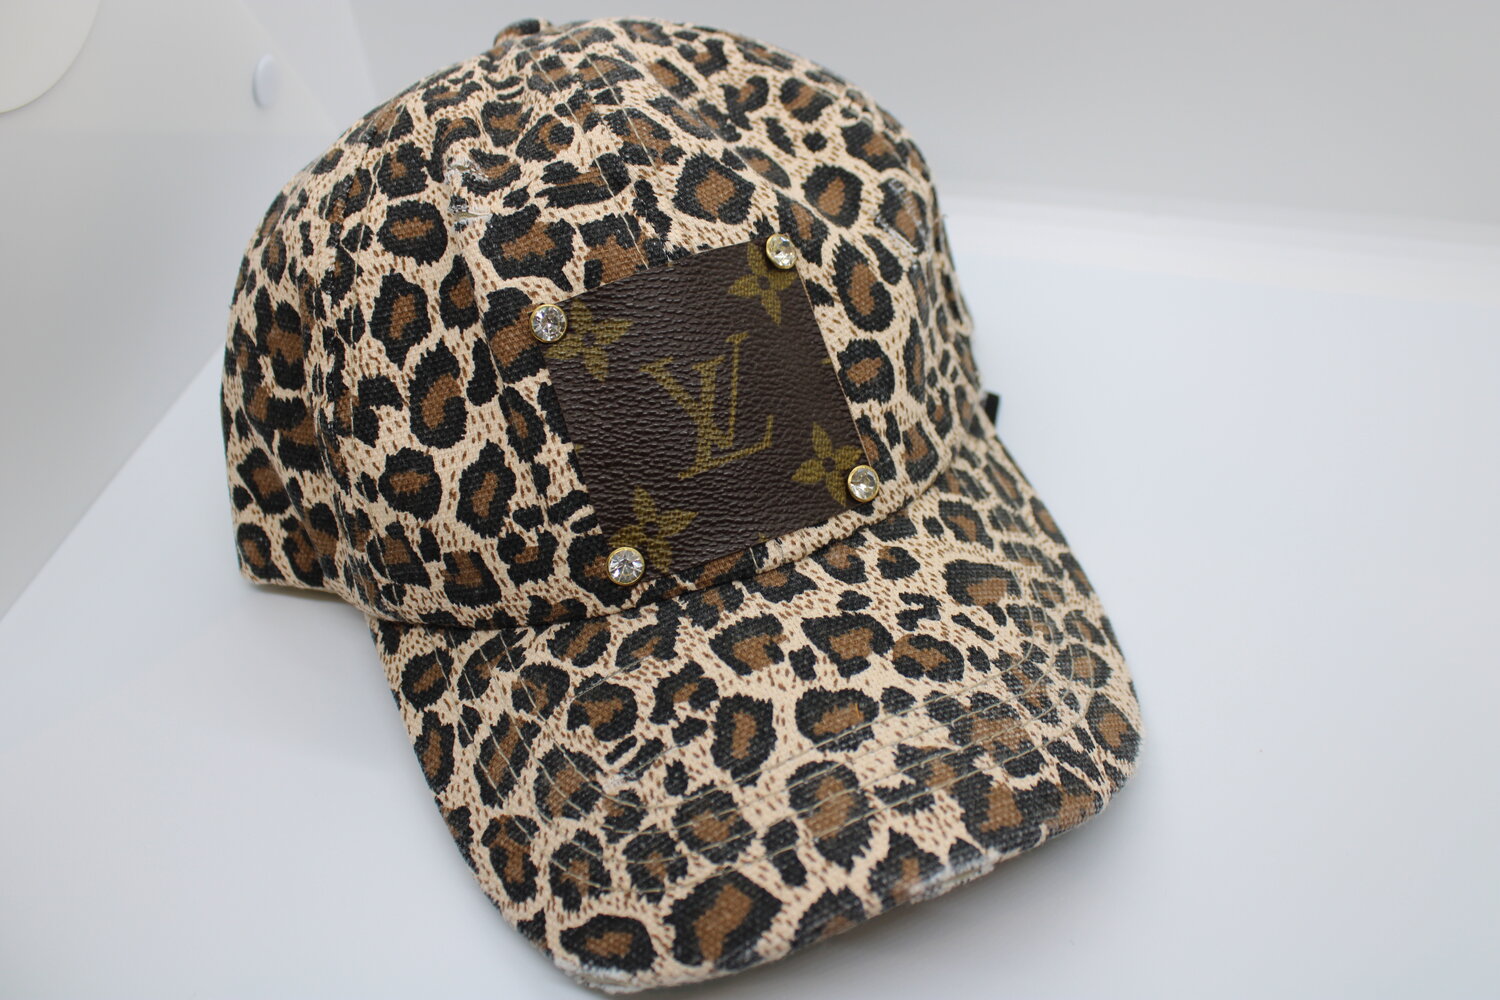 LV Leopard hat – The Leopard Horse Boutique